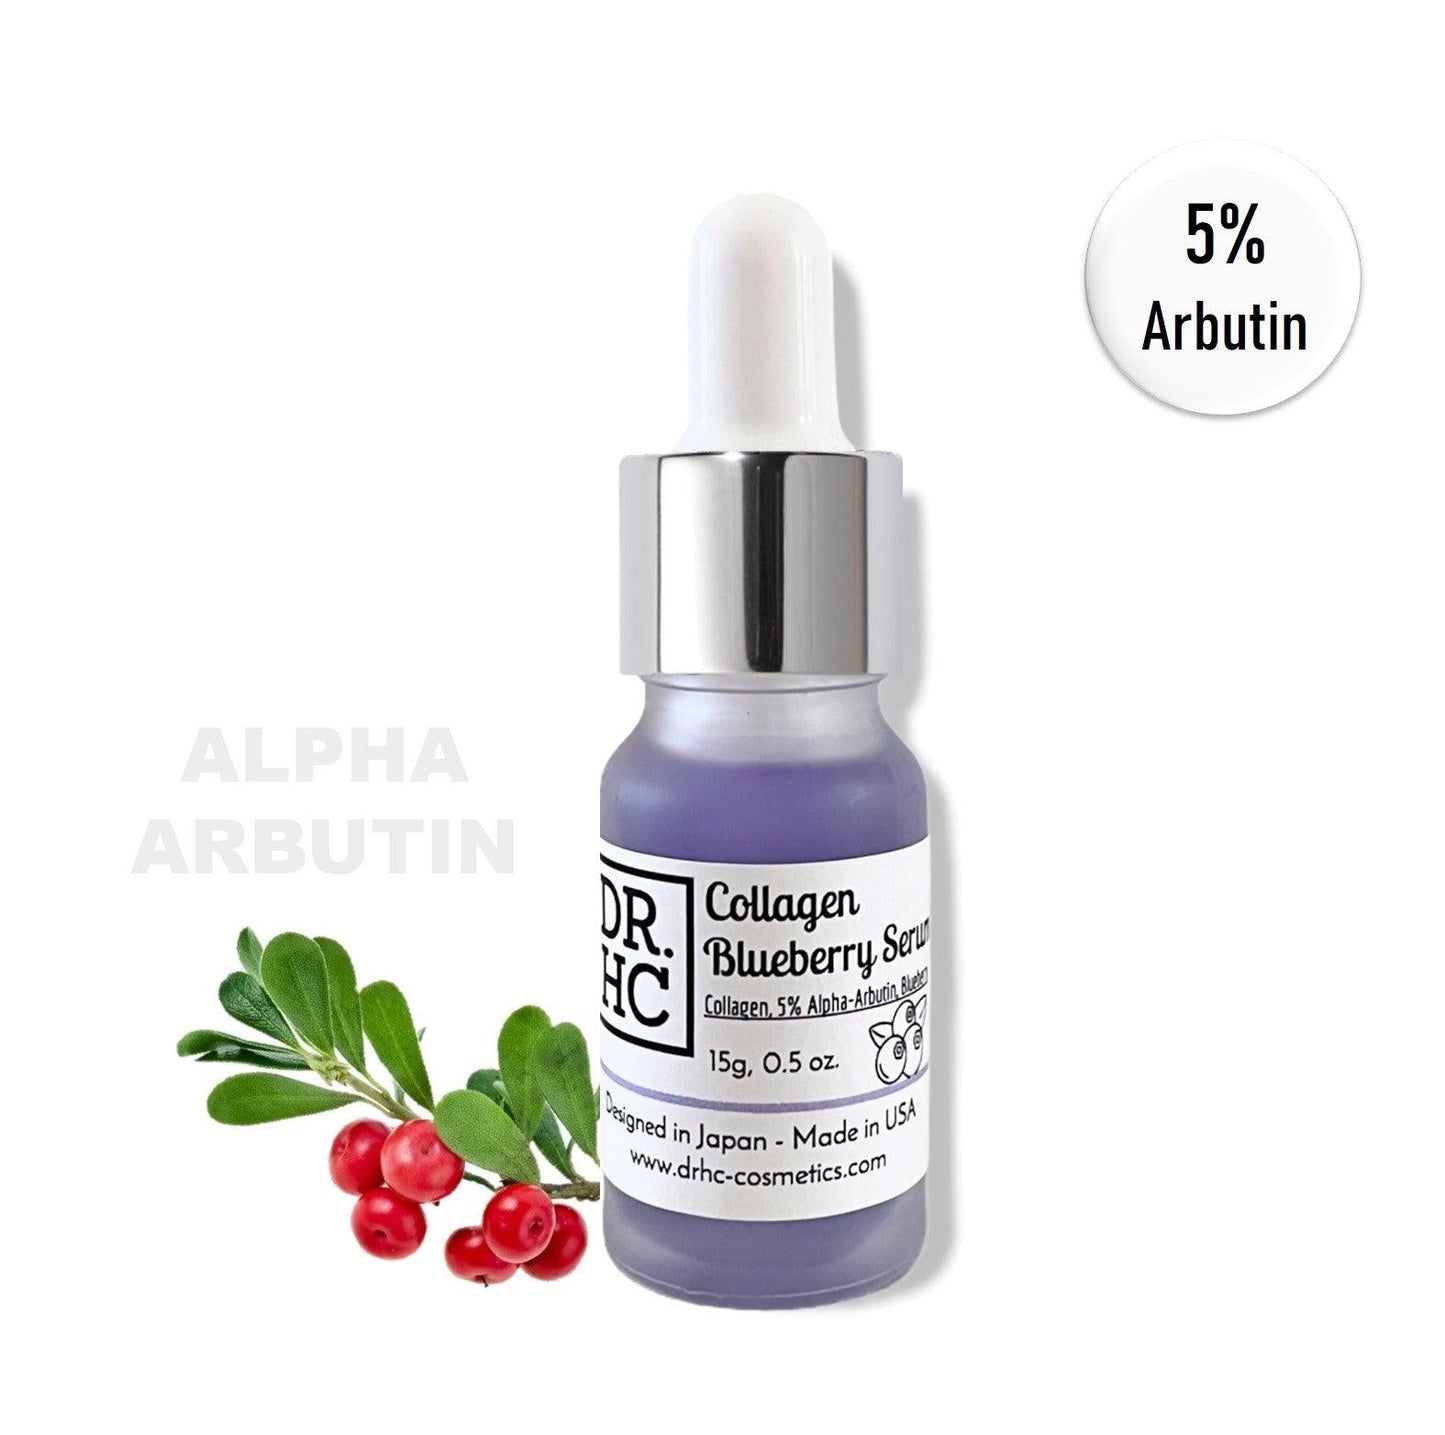 DR.HC Collagen Blueberry Serum (15g, 0.5oz.) (with Collagen, Blueberry & 5% Alpha-Arbutin) (Collagen Supply, Anti-aging, Skin brightening, Skin plumping...)